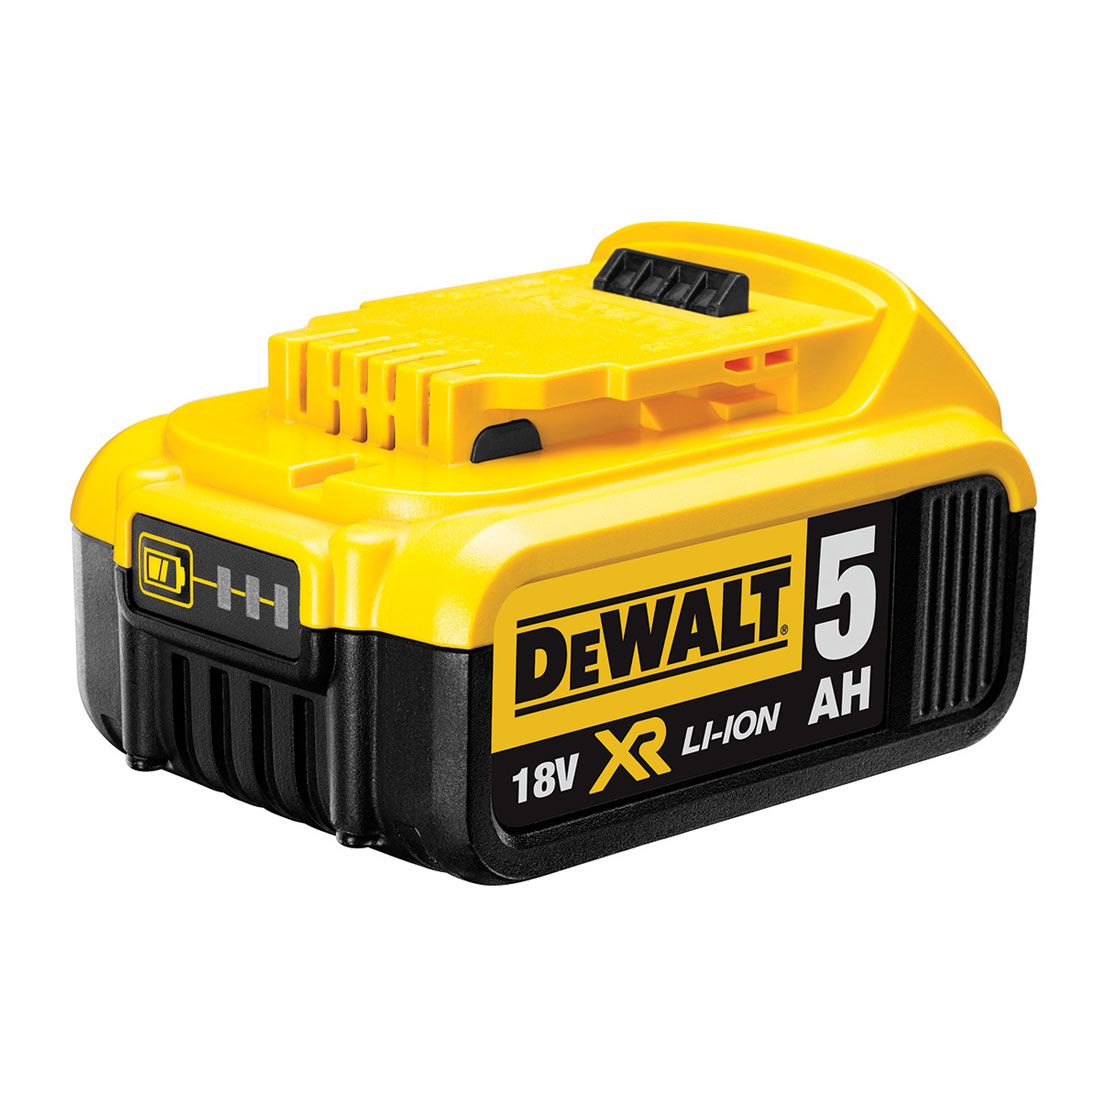 DeWalt DCB184 5.0Ah 18V XR Li-ion Battery & DCB115 Charger Pack